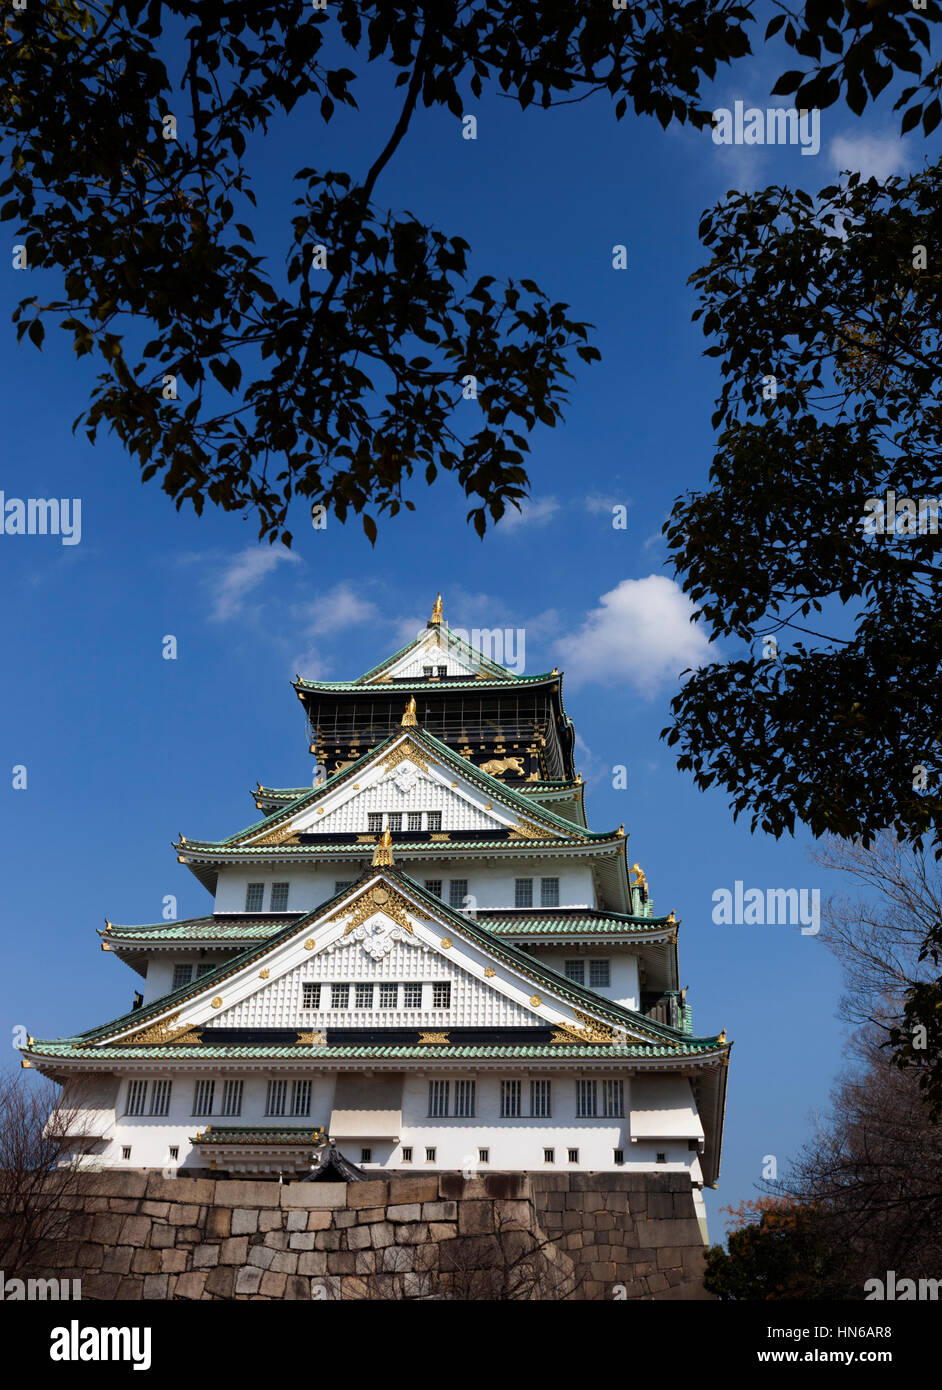 OSAKA, JAPON - 14 mars : La tour principale du château d'Osaka entourée d'arbres dans le parc du château d'Osaka, au Japon le 14 mars 2012. Le bâtiment est un c Banque D'Images